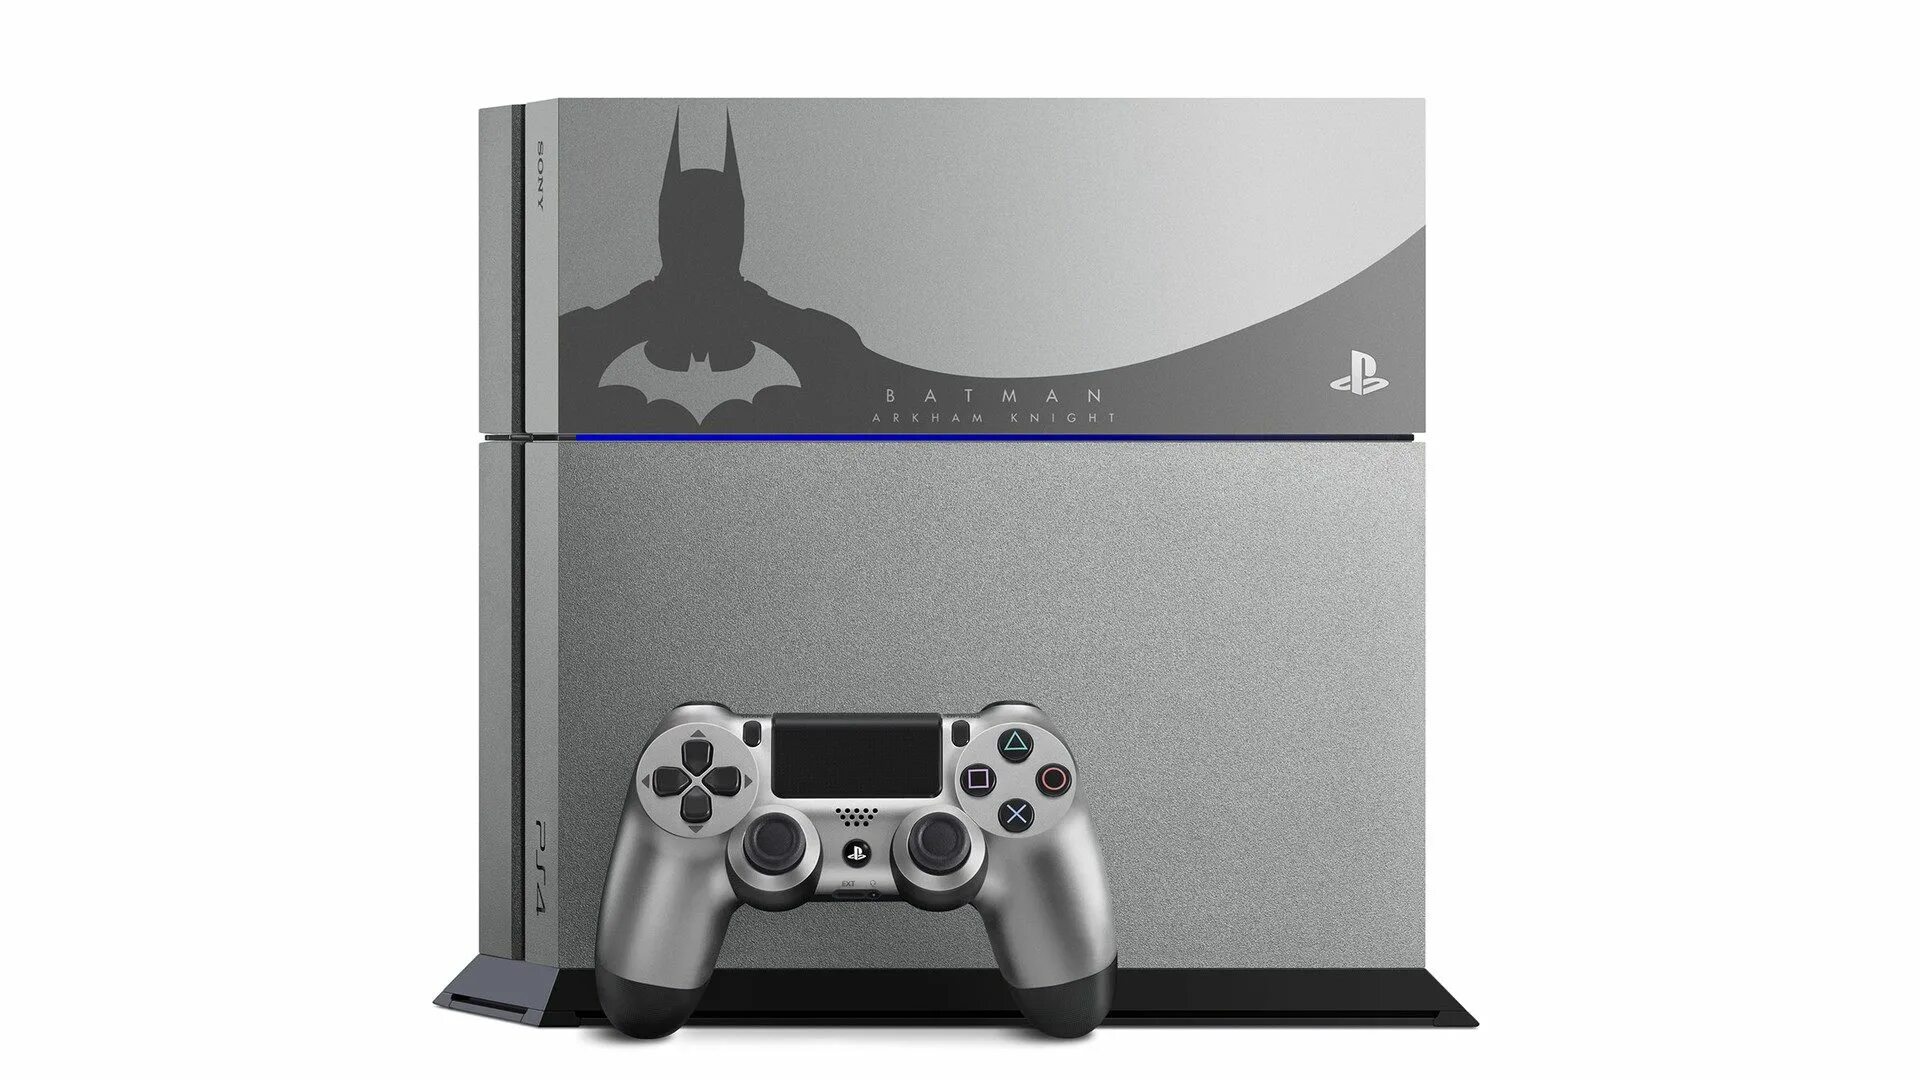 Игровая консоль Sony PLAYSTATION 4. PLAYSTATION 4 бандл. Sony PLAYSTATION 4 Бэтмен. PLAYSTATION 4 Batman Arkham Knight Edition. Playstation bundle